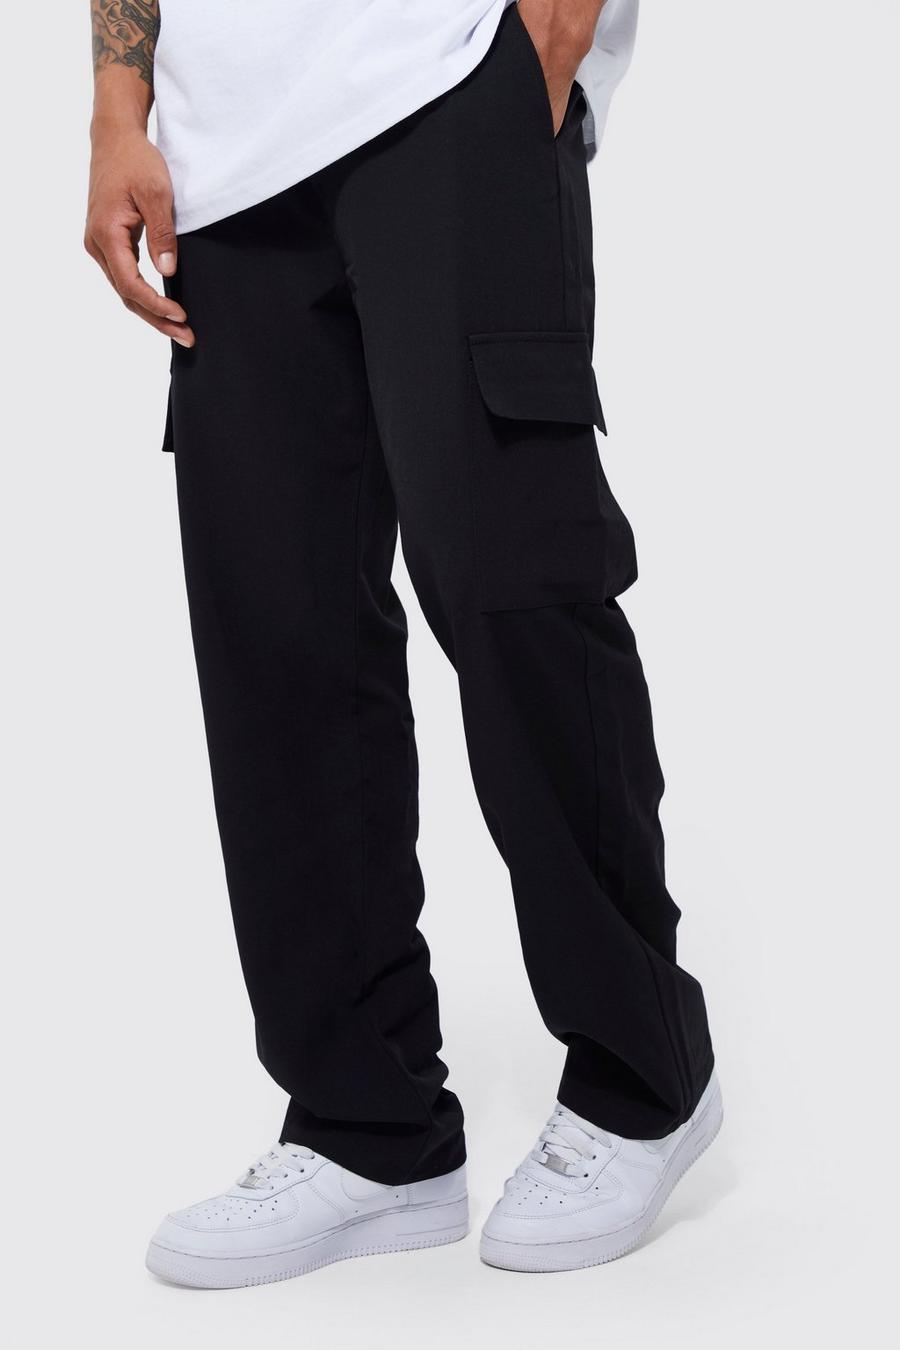 Pantalón cargo holgado con cintura elástica, Black negro